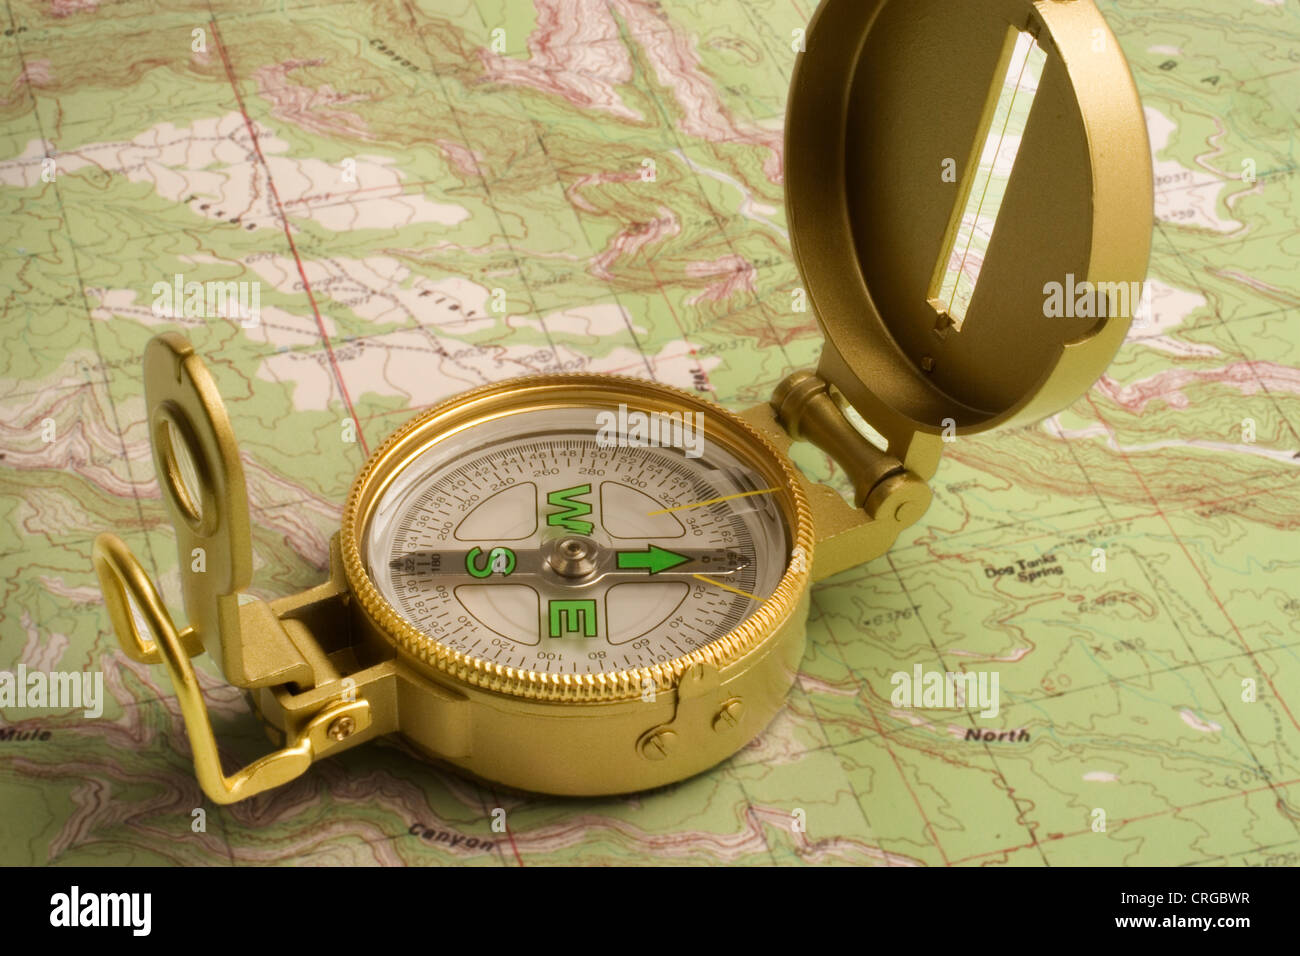 Lensatic compass immagini e fotografie stock ad alta risoluzione - Alamy